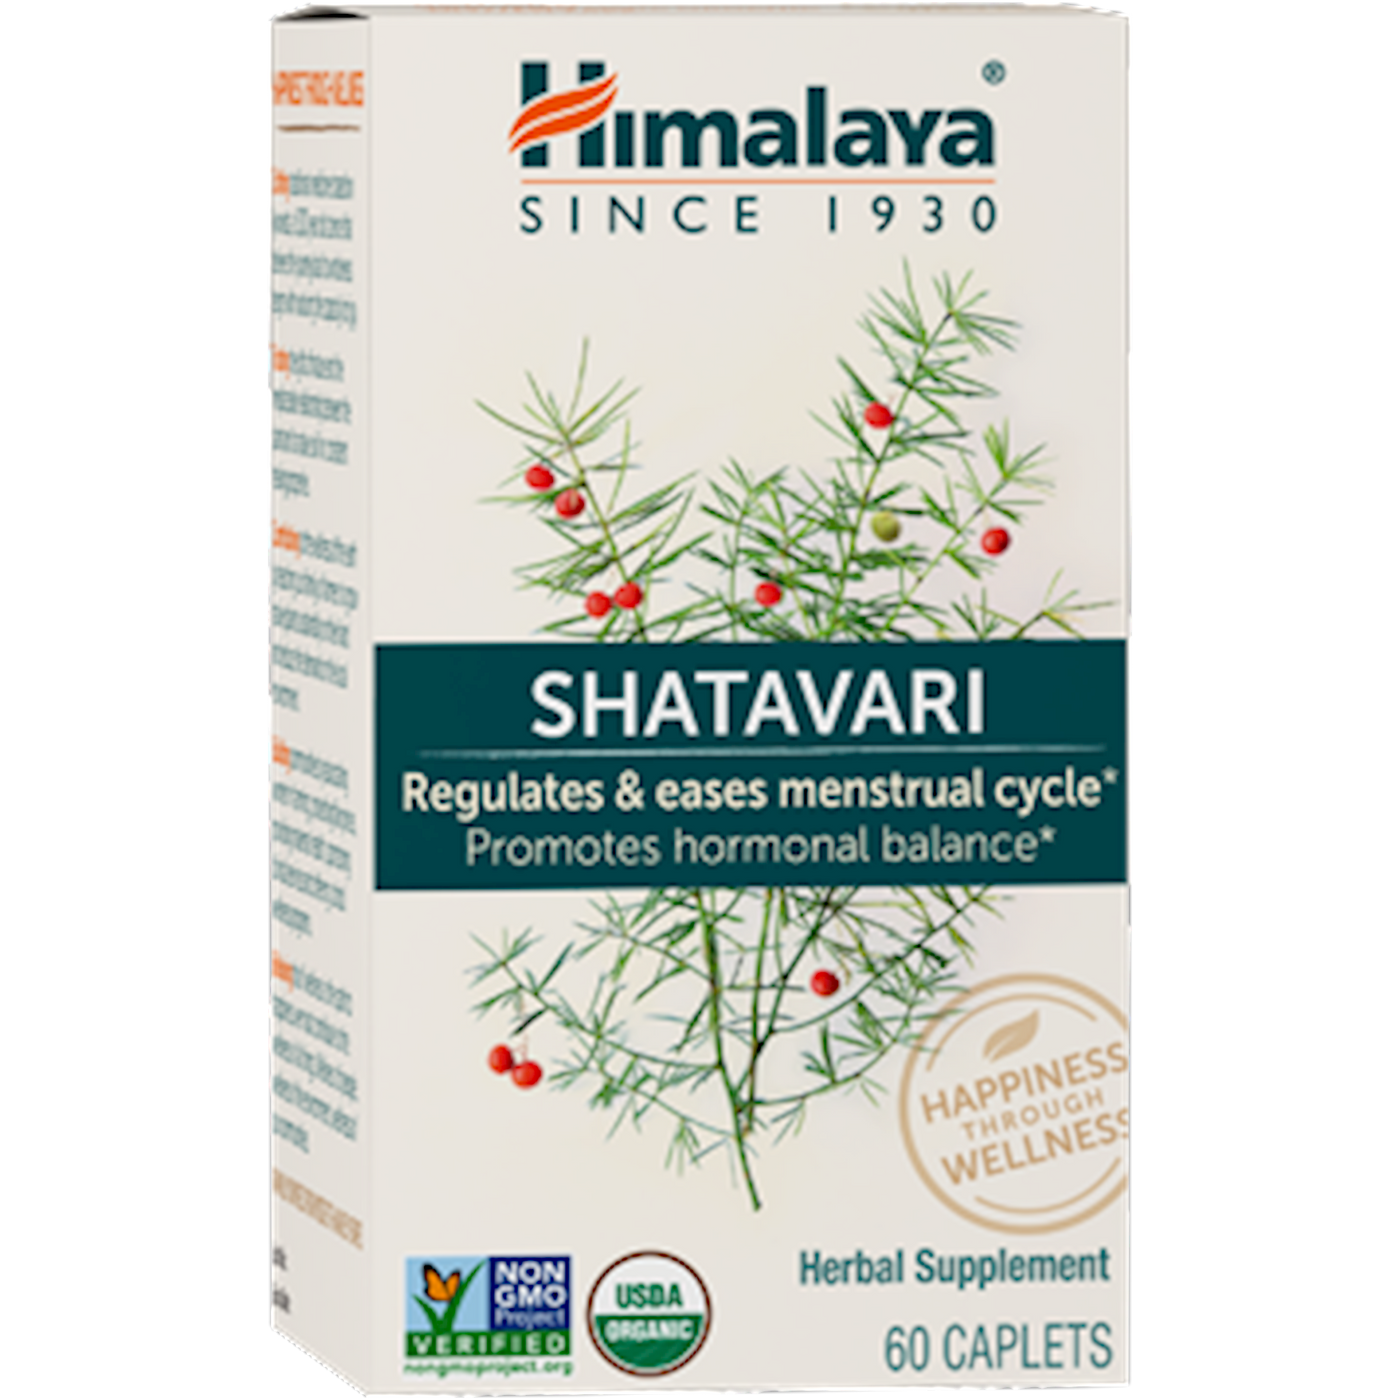 Shatavari s Curated Wellness